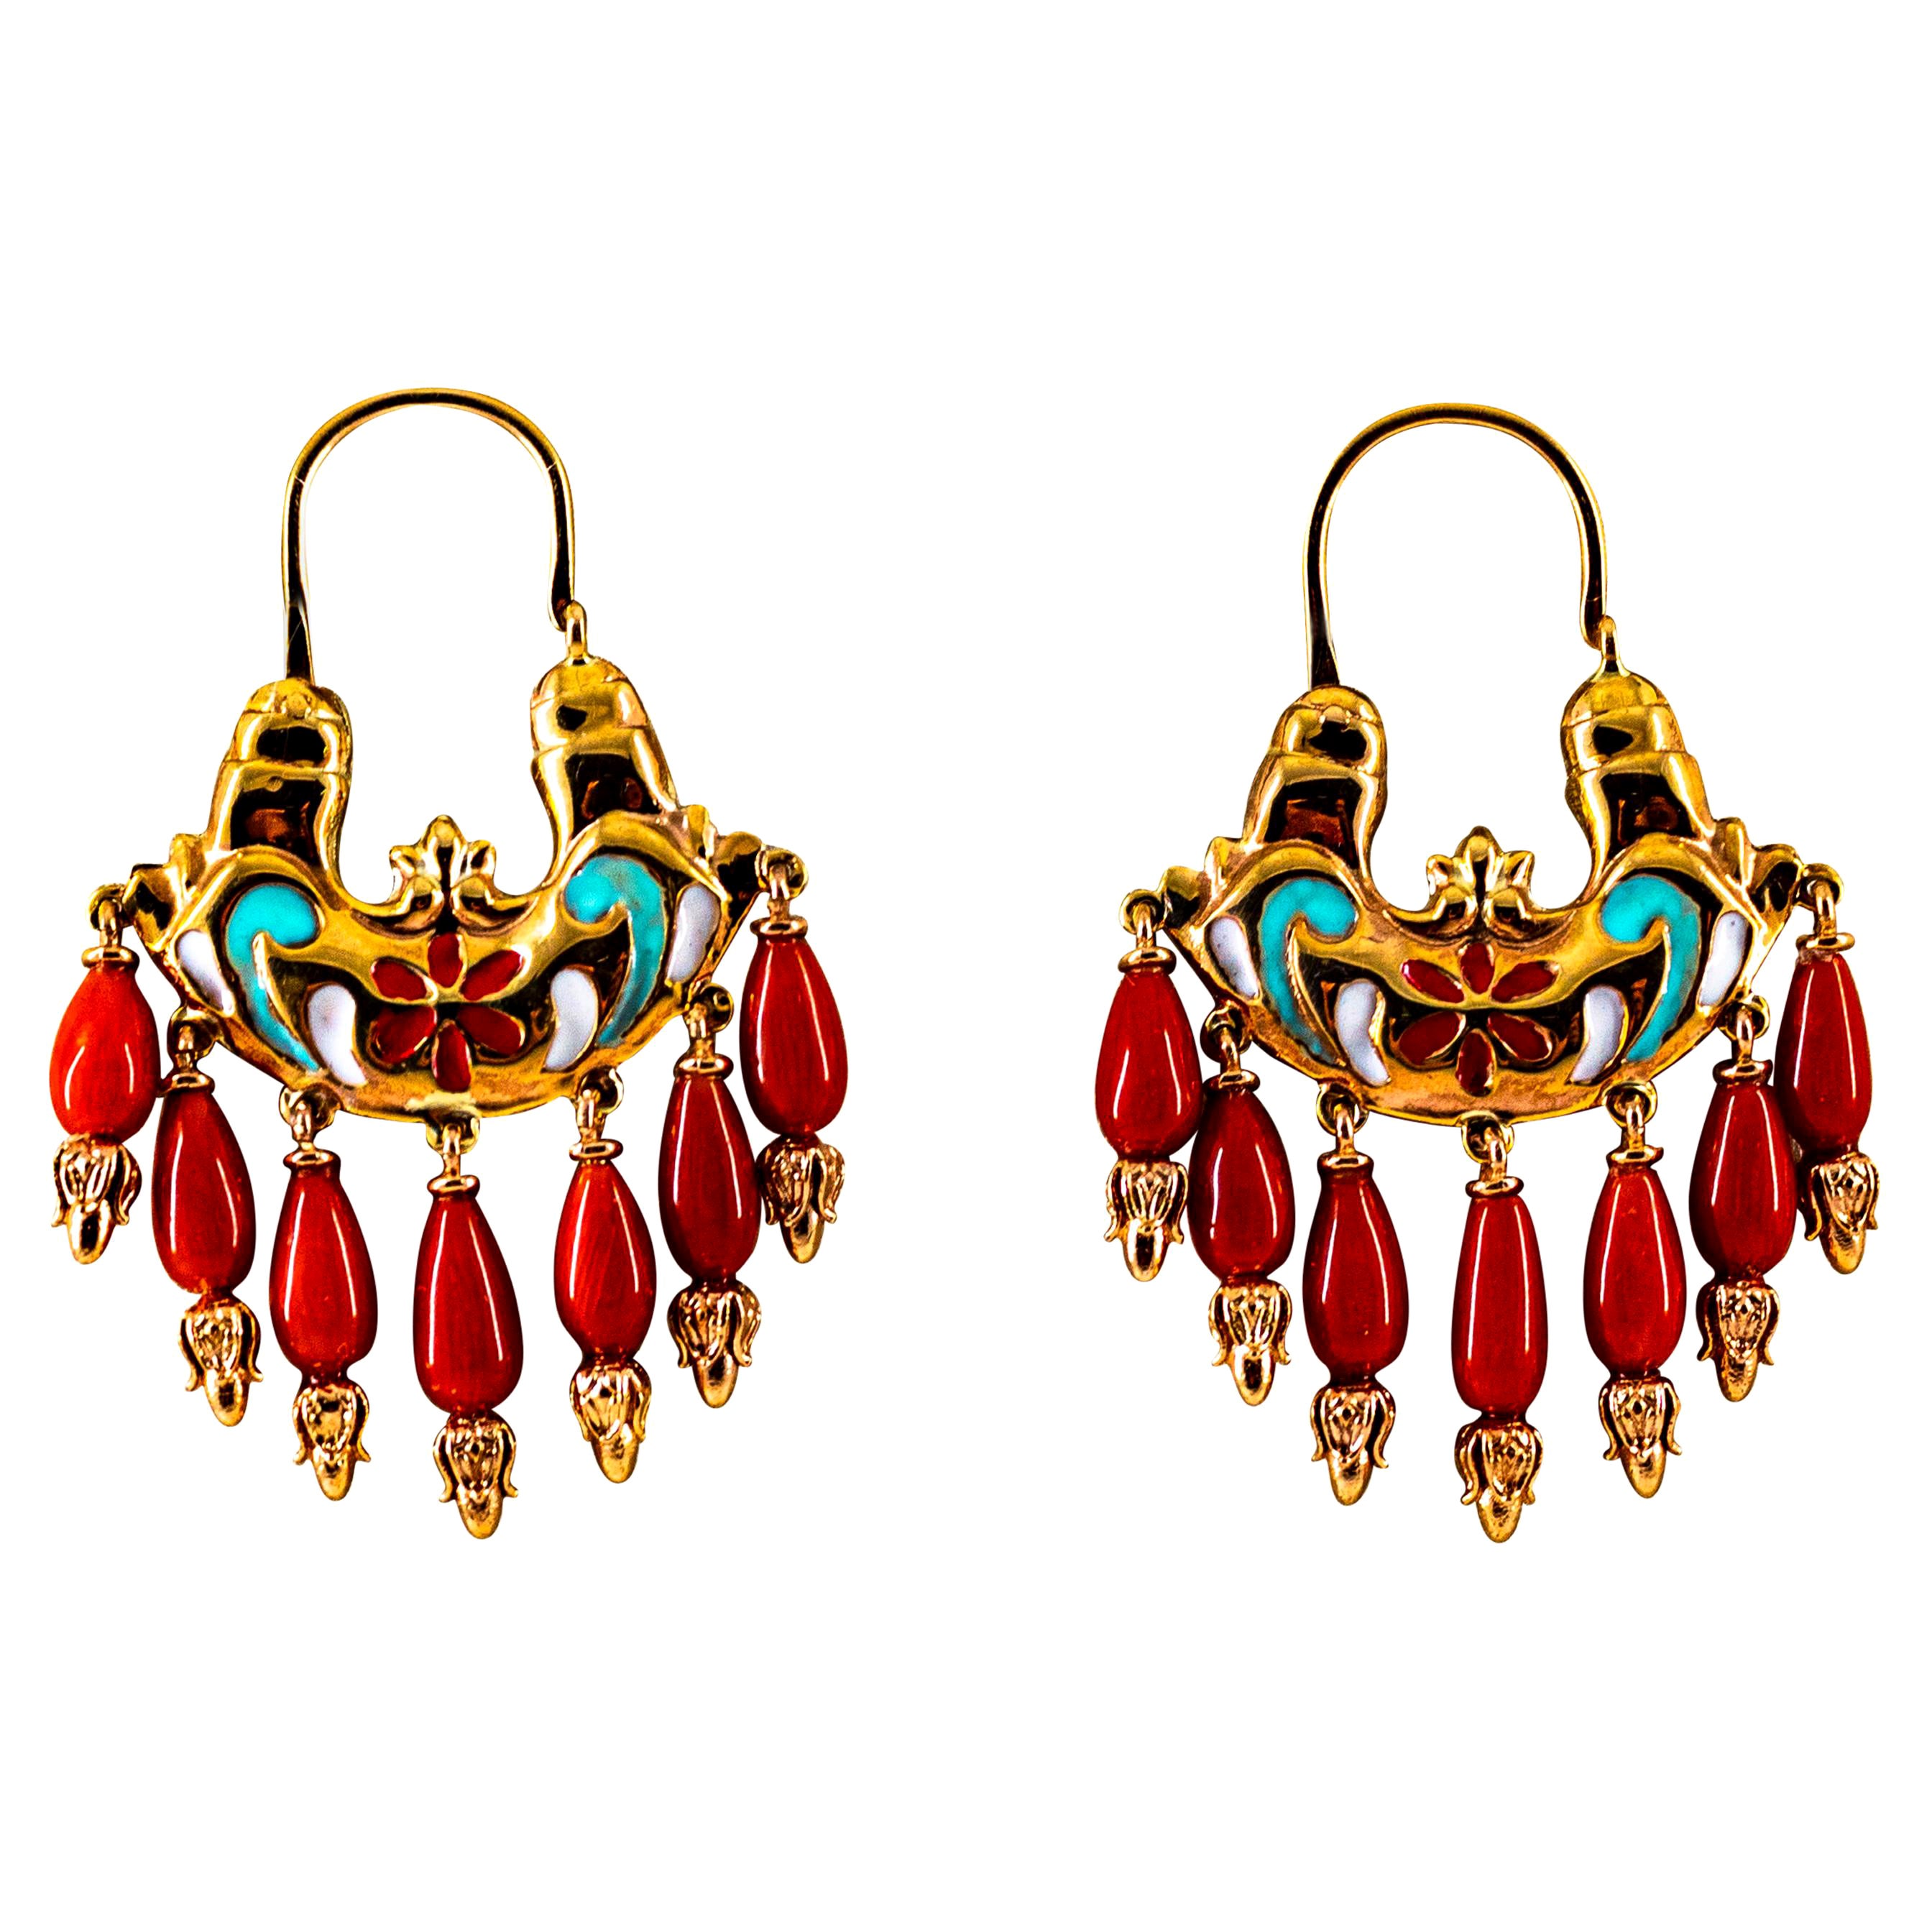 Clous d'oreilles de style Art Nouveau en or jaune, émail et corail rouge méditerranéen